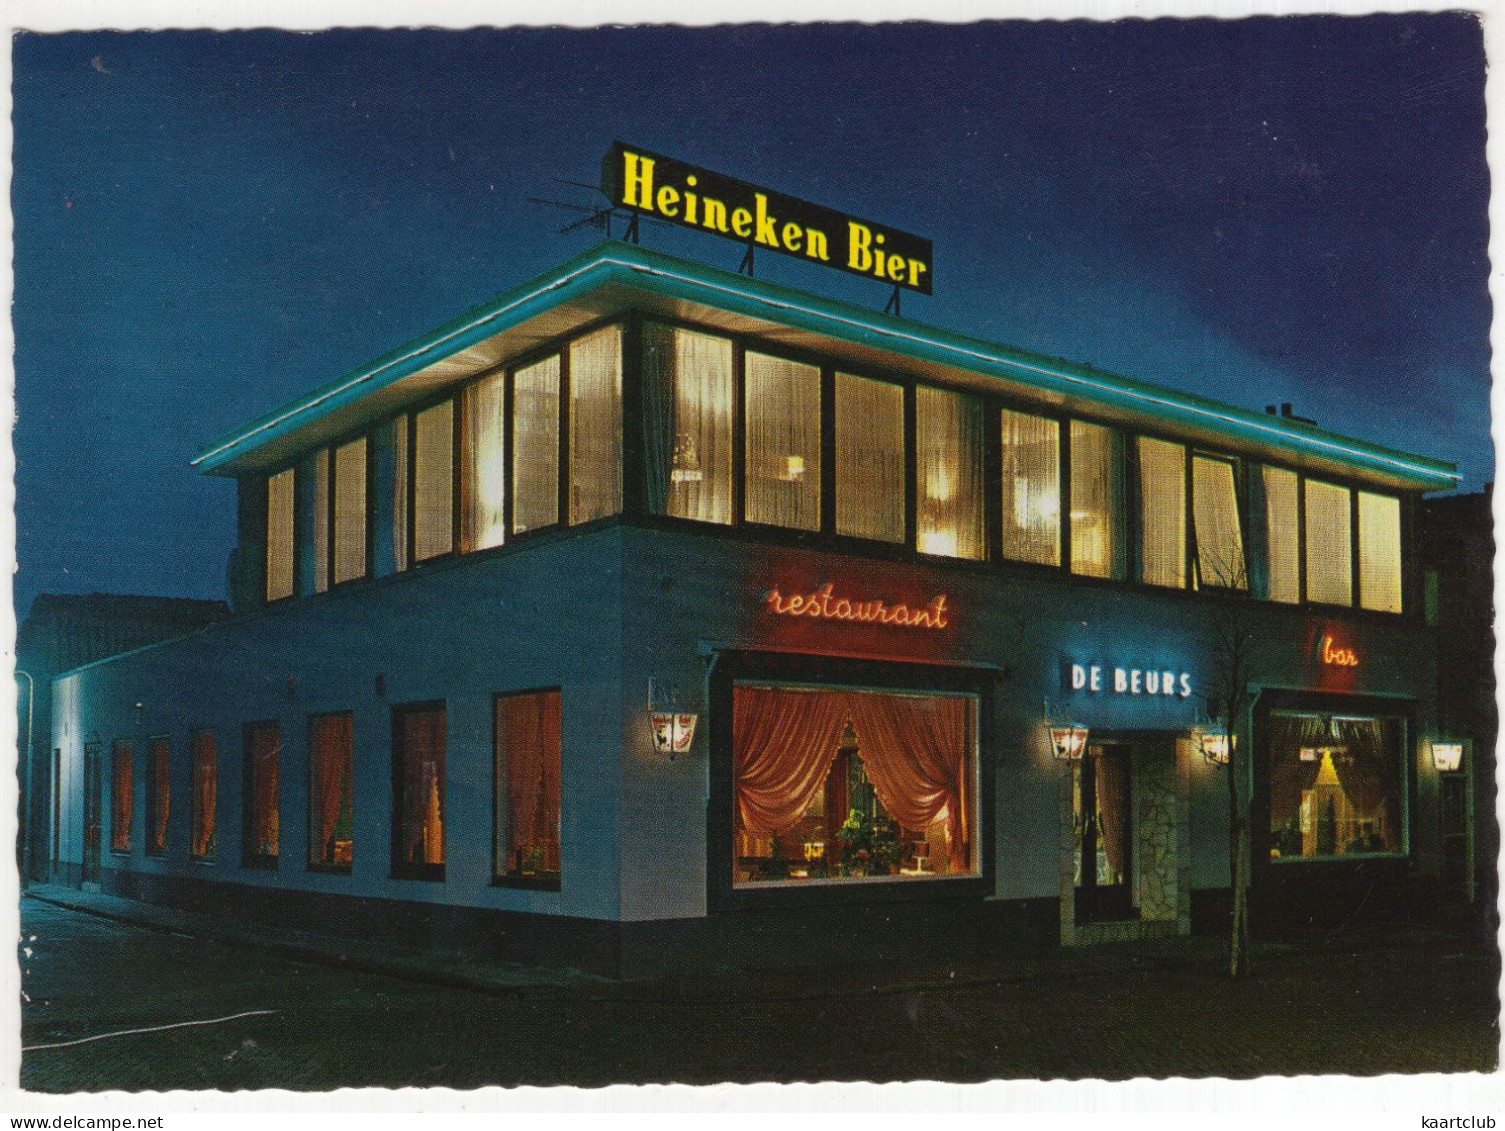 Noordwijk - Hotel Restaurant 'De Beurs' & Bar 'Sand Souci', Voorstraat 23 - (Nederland/Zuid-Holland) 'Heineken Bier' - Noordwijk (aan Zee)